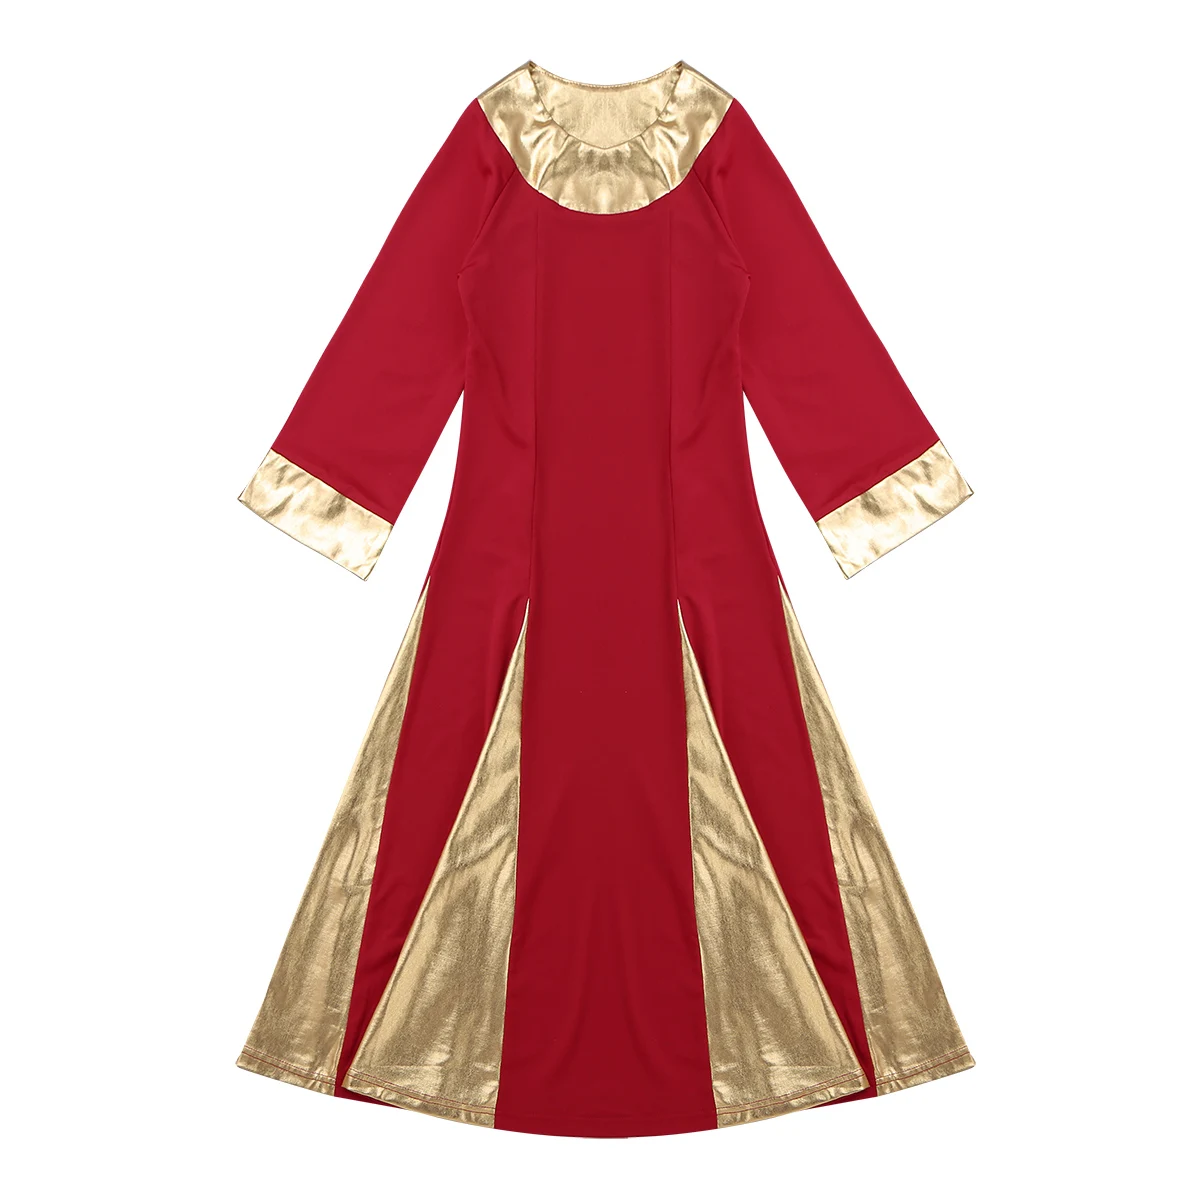 Iiniim/танцевальное платье-пачка для девочек; детское платье с длинными рукавами и металлическим воротником; платье для праздника; платье для танцев